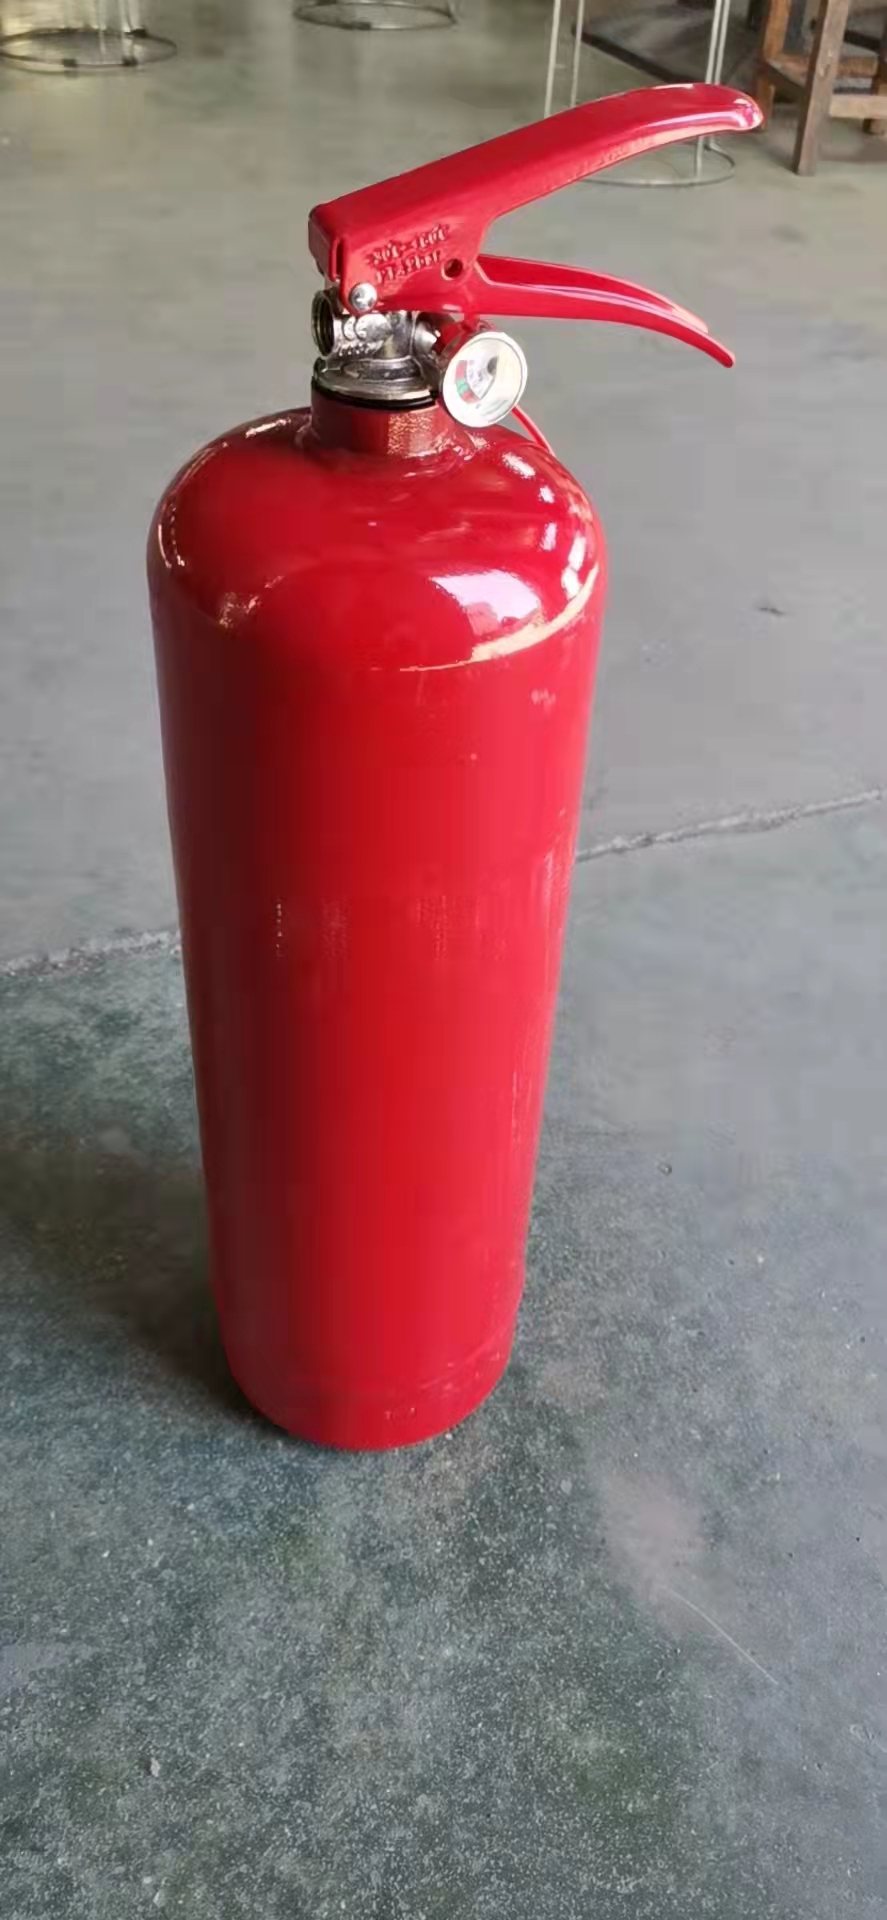 Trockenpulver-Feuerlöscher für brennbare Flüssigkeiten